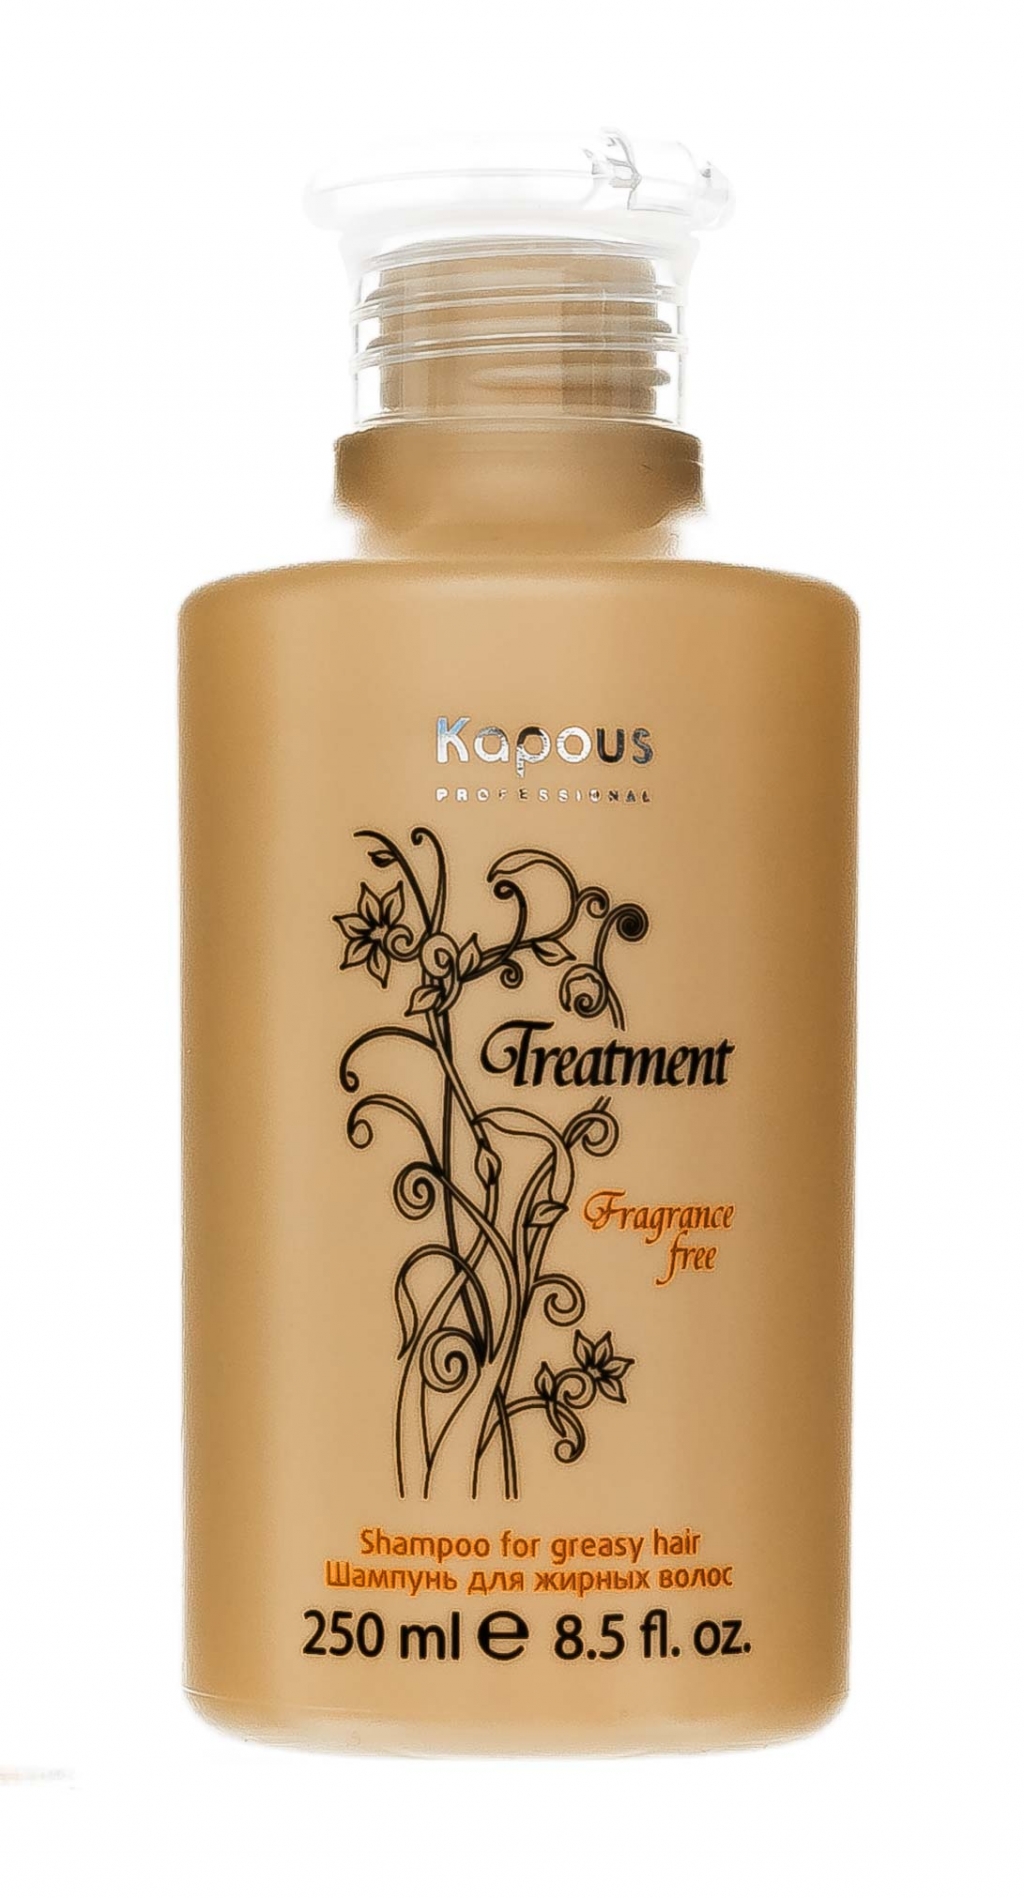 Kapous Professional Шампунь для жирных волос 250 мл (Kapous Professional, Fragrance free)